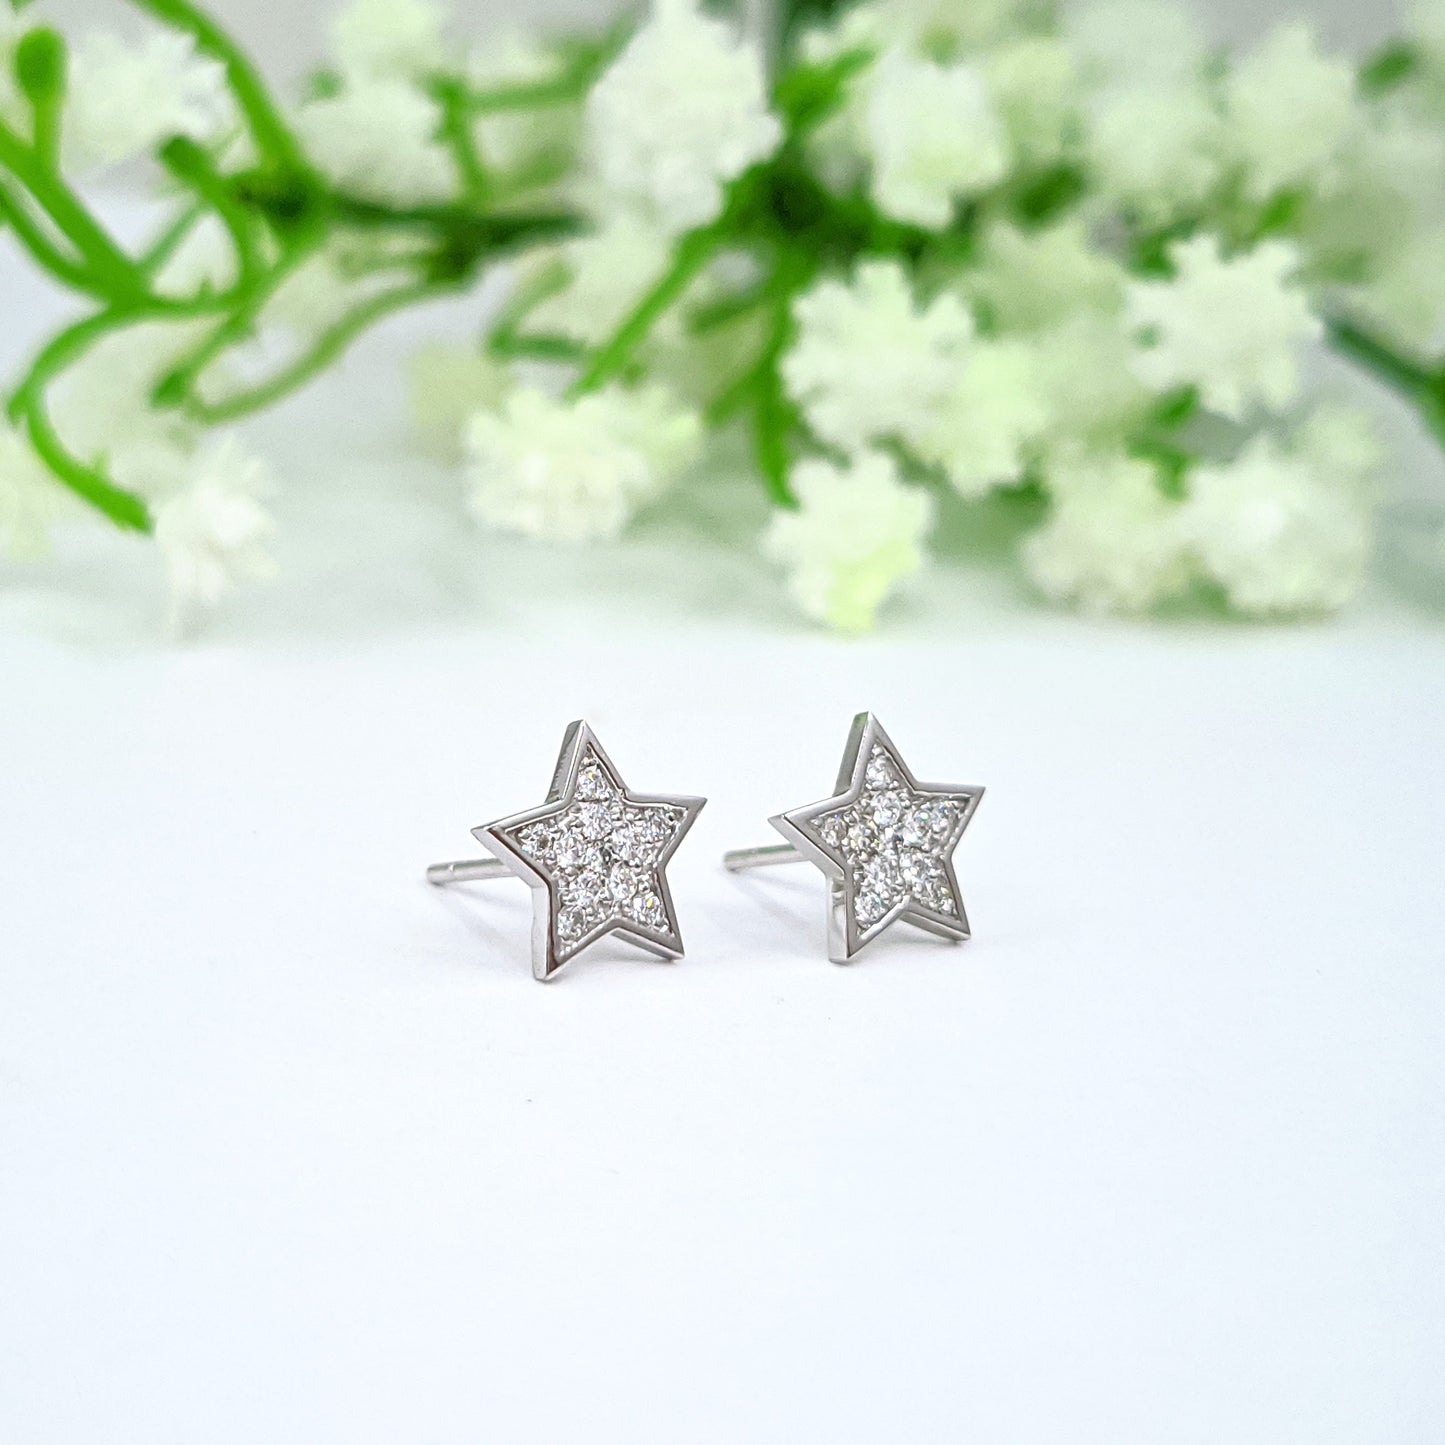 Diamond Star Earrings/ Star Stud Earrings/ 100% Natural Diamonds Star Earrings/ Anniversary gift